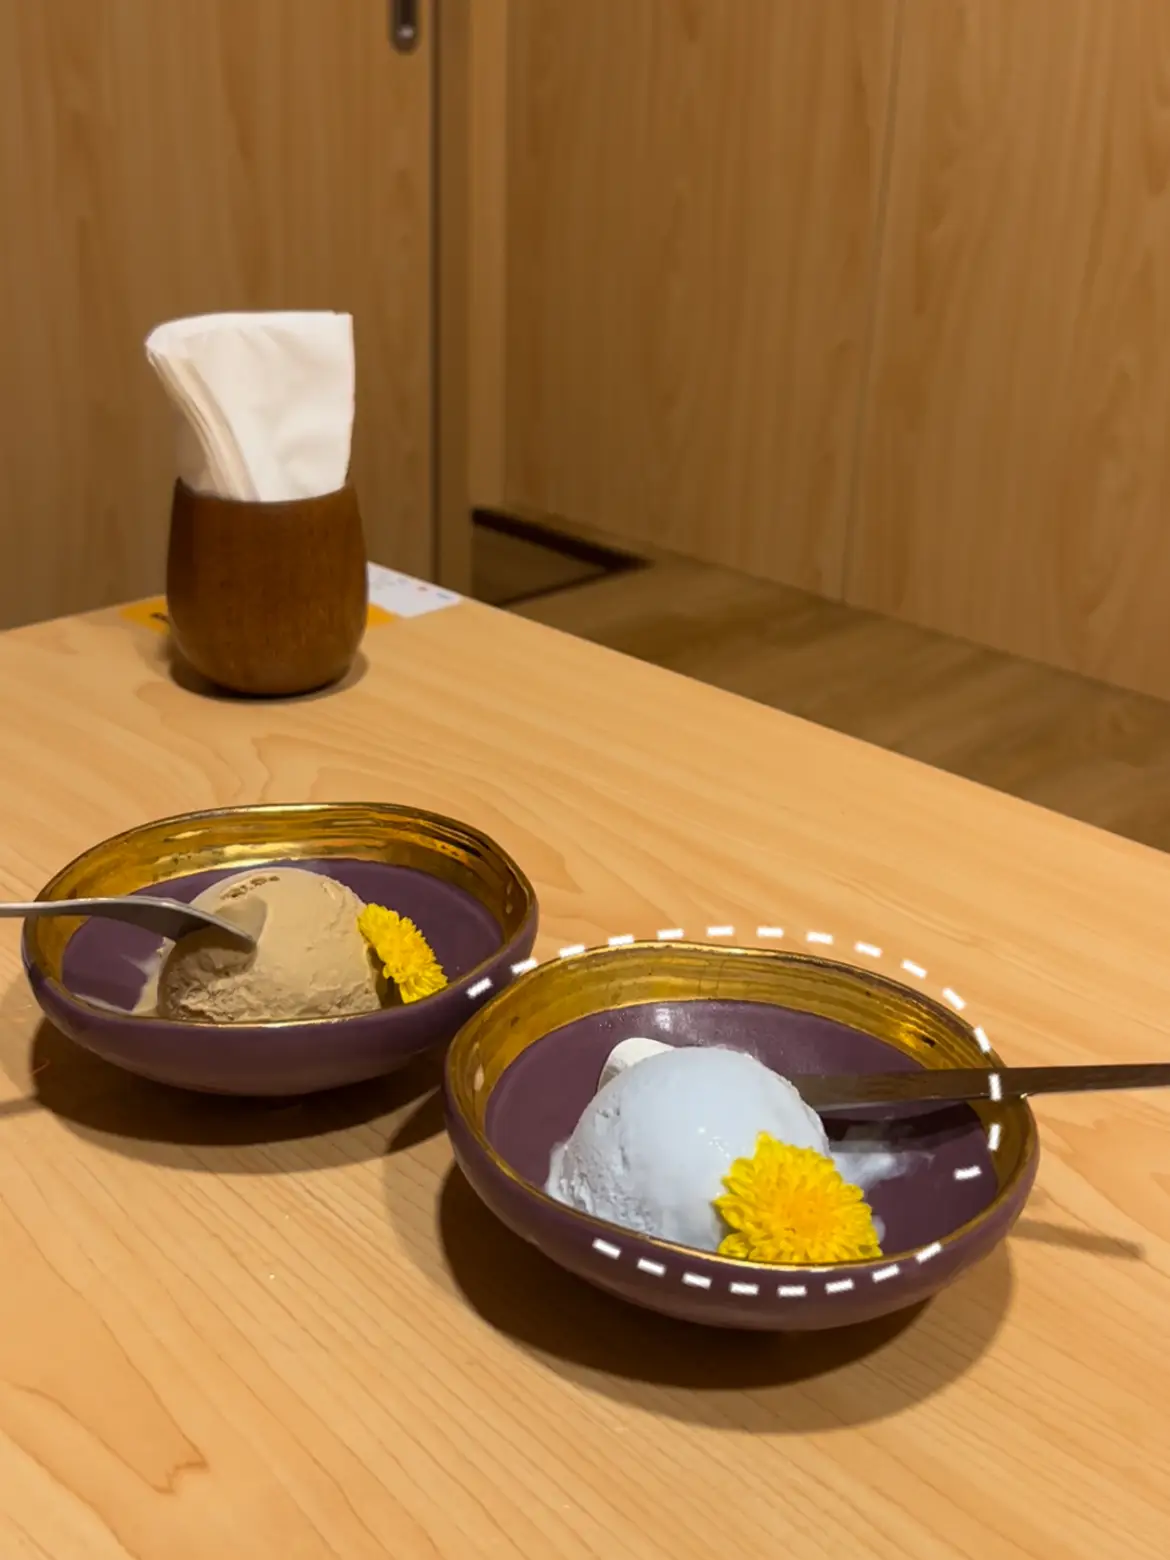 Affordable Japanese Restaurant at Golden Mile 🏮 's images(4)